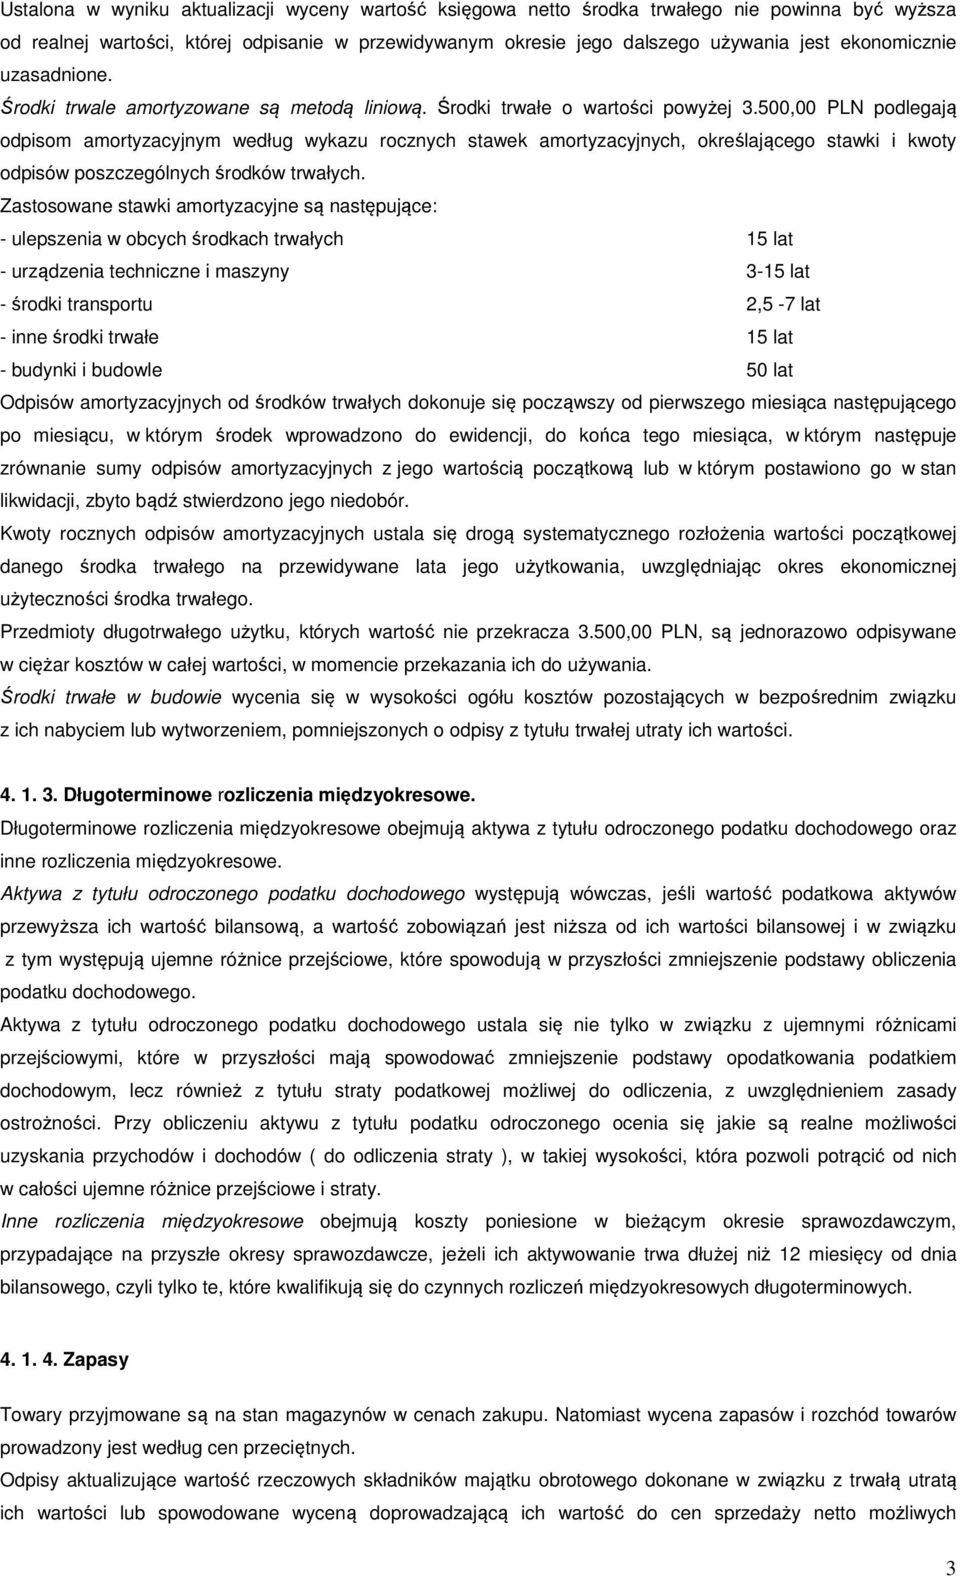 500,00 PLN podlegają odpisom amortyzacyjnym według wykazu rocznych stawek amortyzacyjnych, określającego stawki i kwoty odpisów poszczególnych środków trwałych.